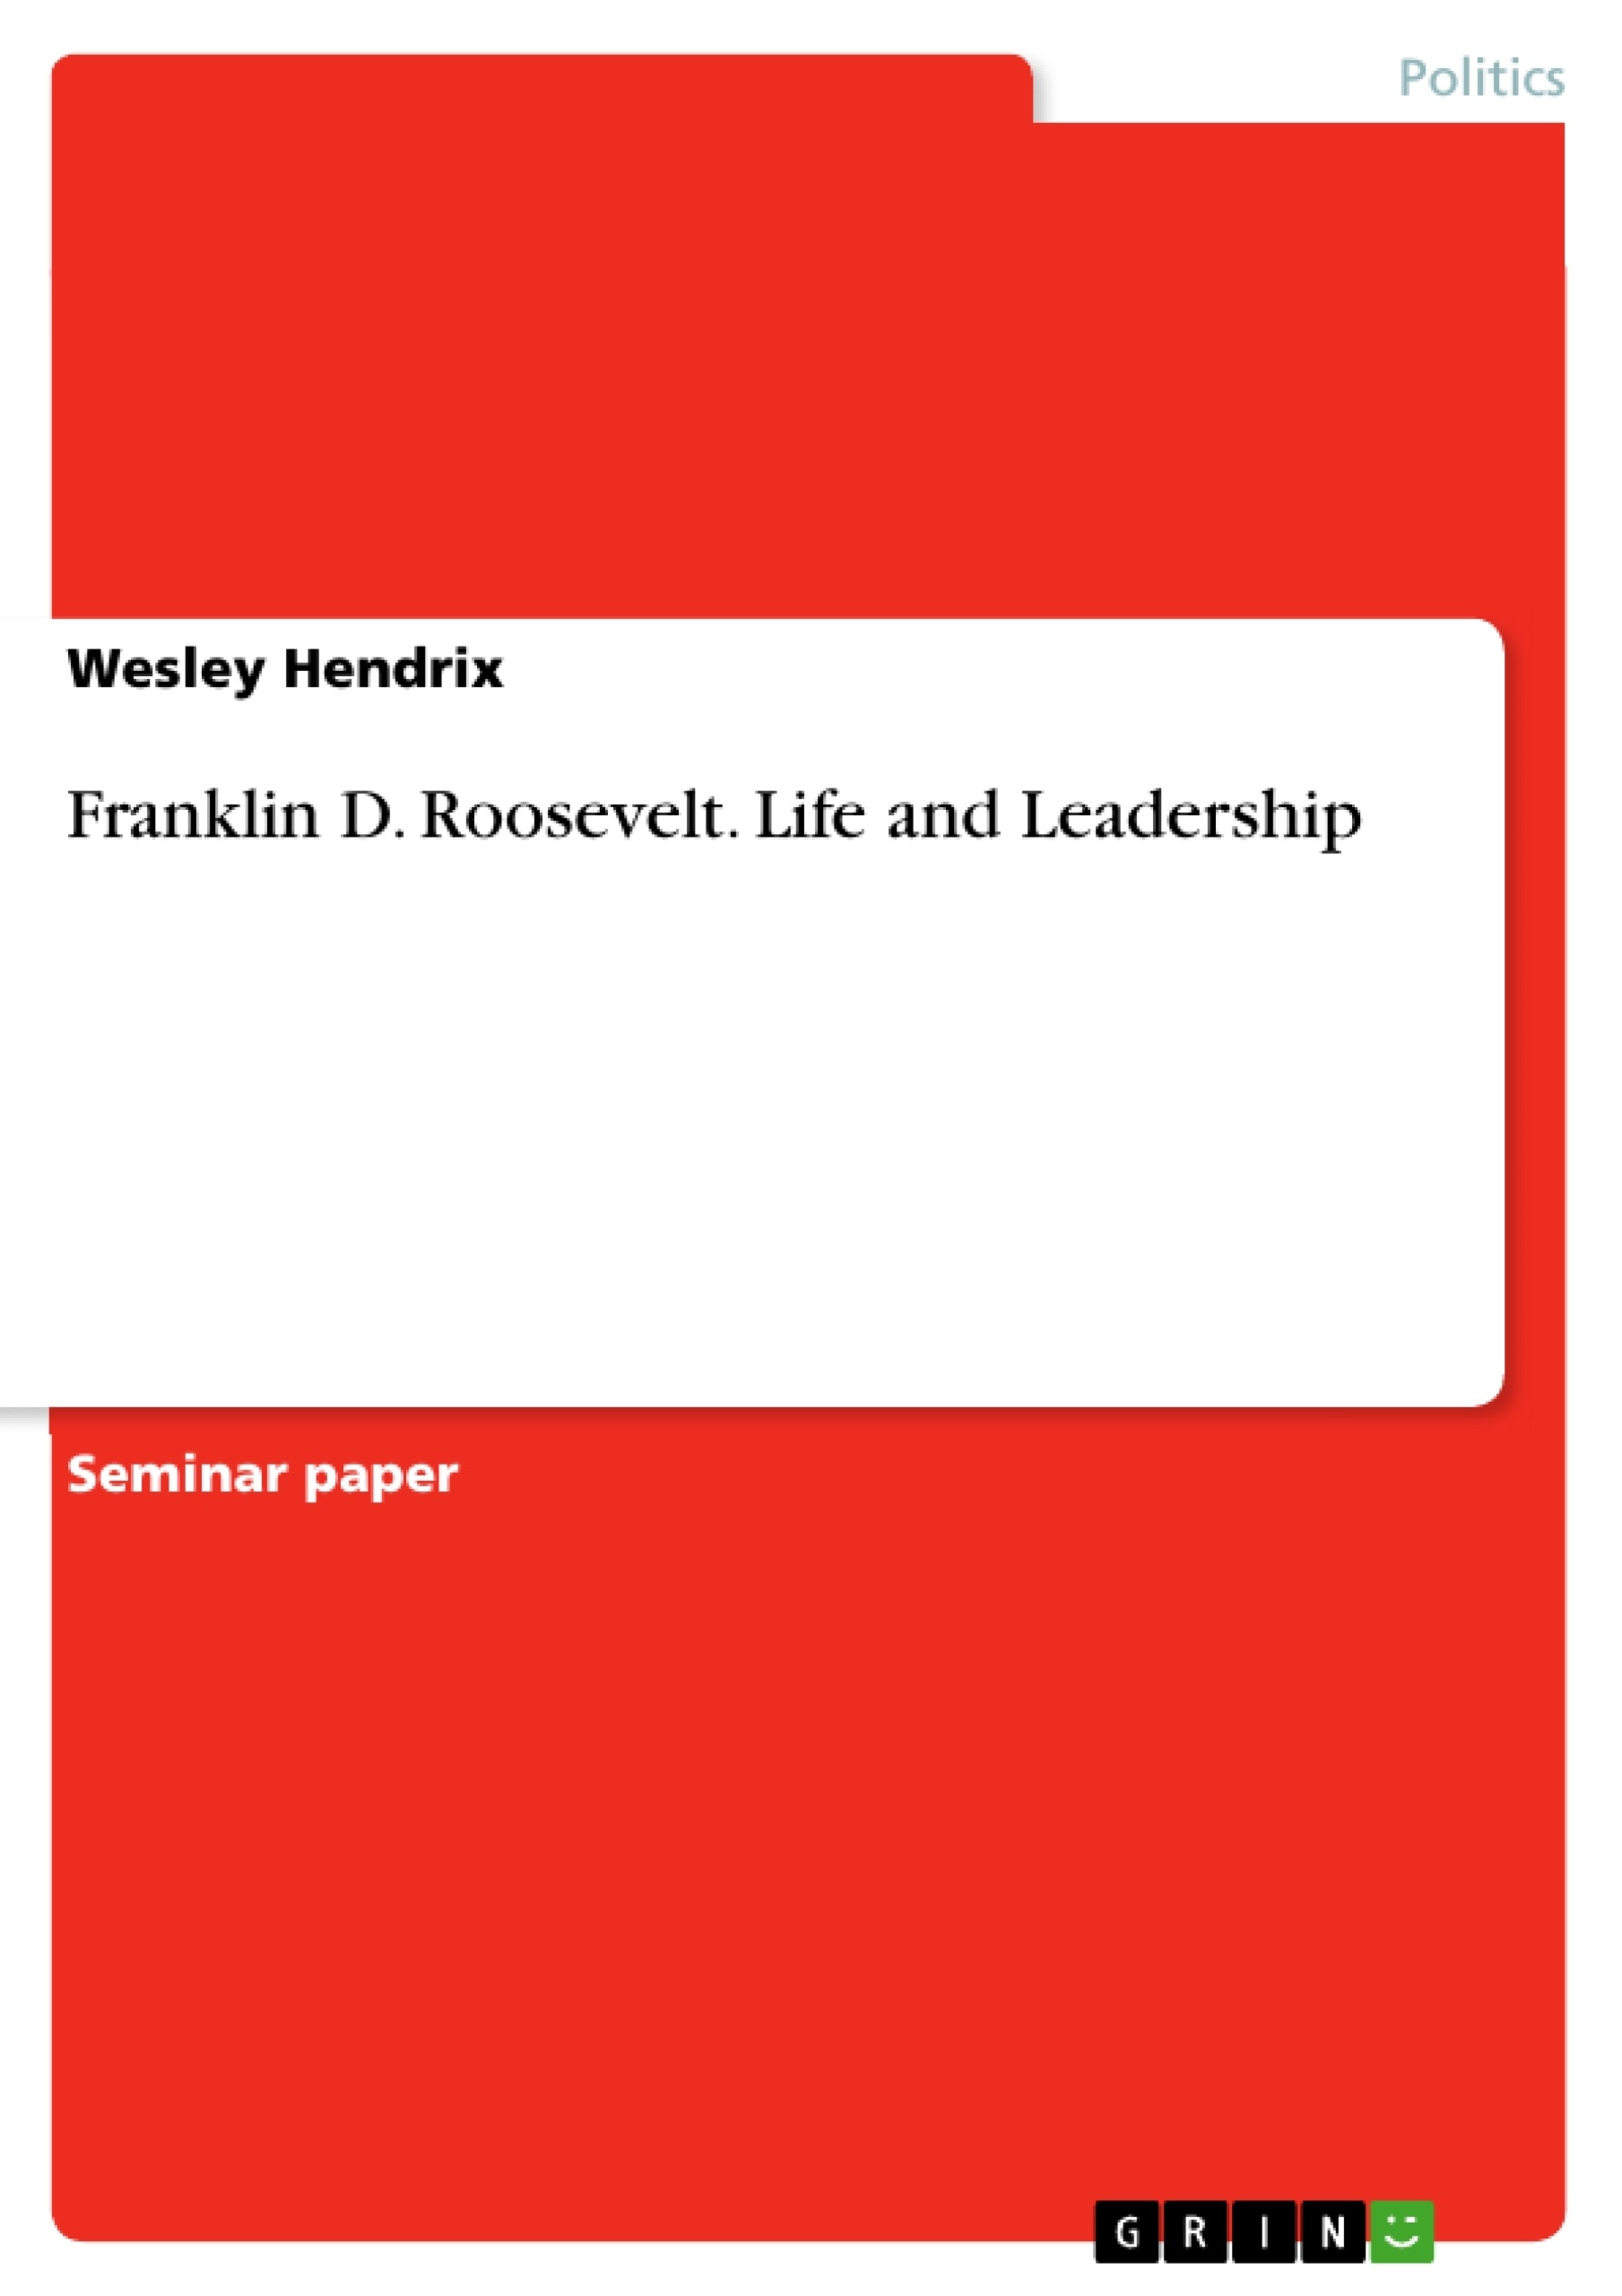 Roosevelt.　Life　Leadership　Franklin　GRIN　D.　and